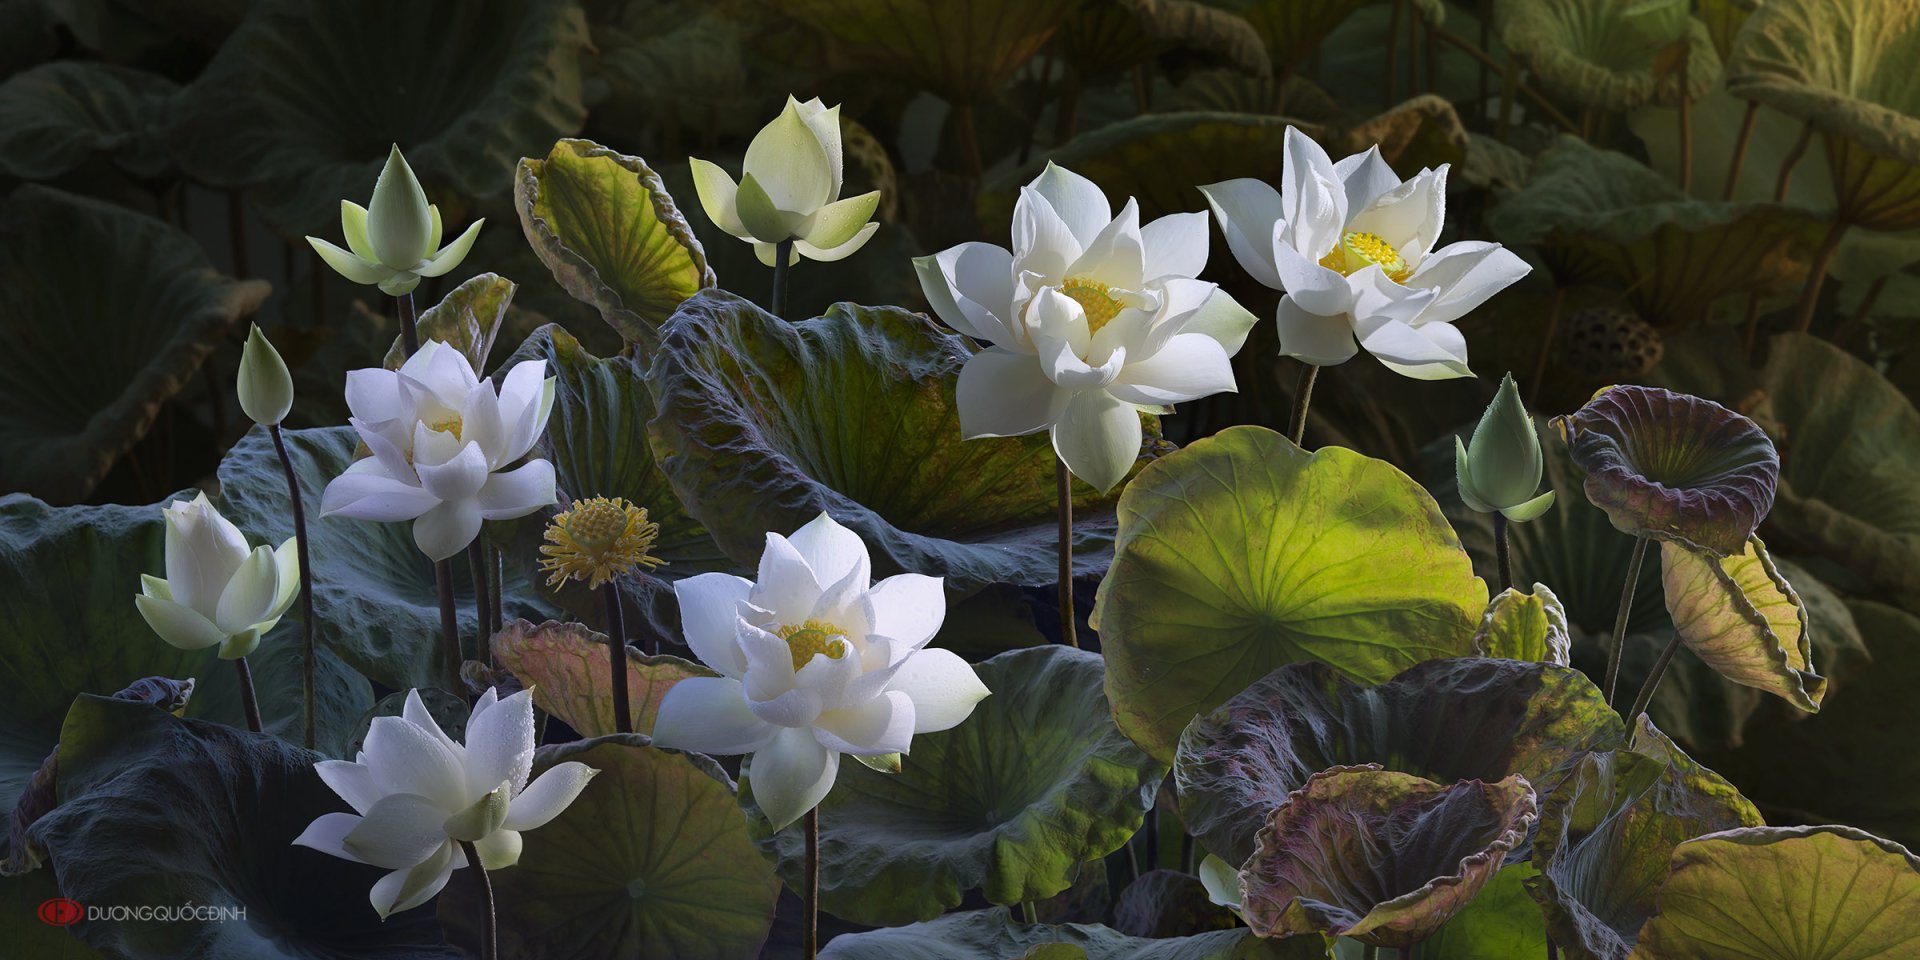 Hoa sen trắng: Hãy cùng chiêm ngưỡng những hình ảnh tuyệt đẹp về hoa sen trắng, với sắc trắng tinh tế và lộng lẫy như chính vẻ đẹp trong truyền thuyết. Bạn sẽ được chiêm ngưỡng những hình ảnh tuyệt vời này cùng với hương thơm ngát của hoa sen.